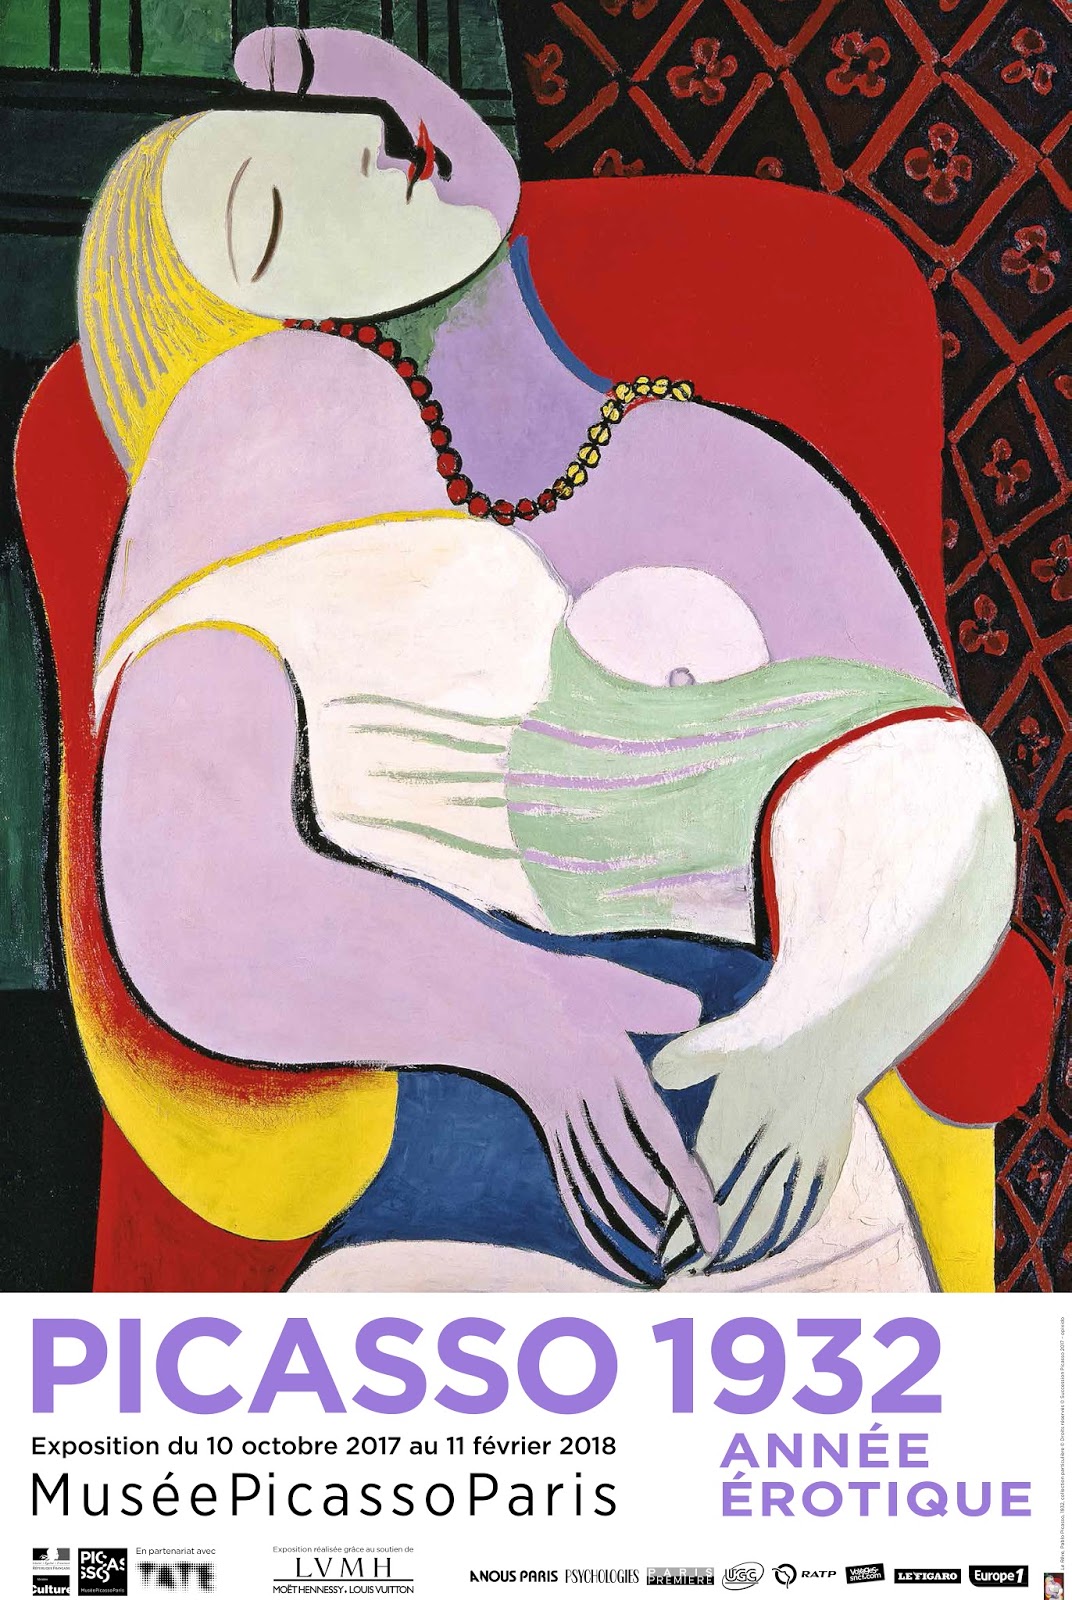 Picasso 1932, année érotique au musée Picasso